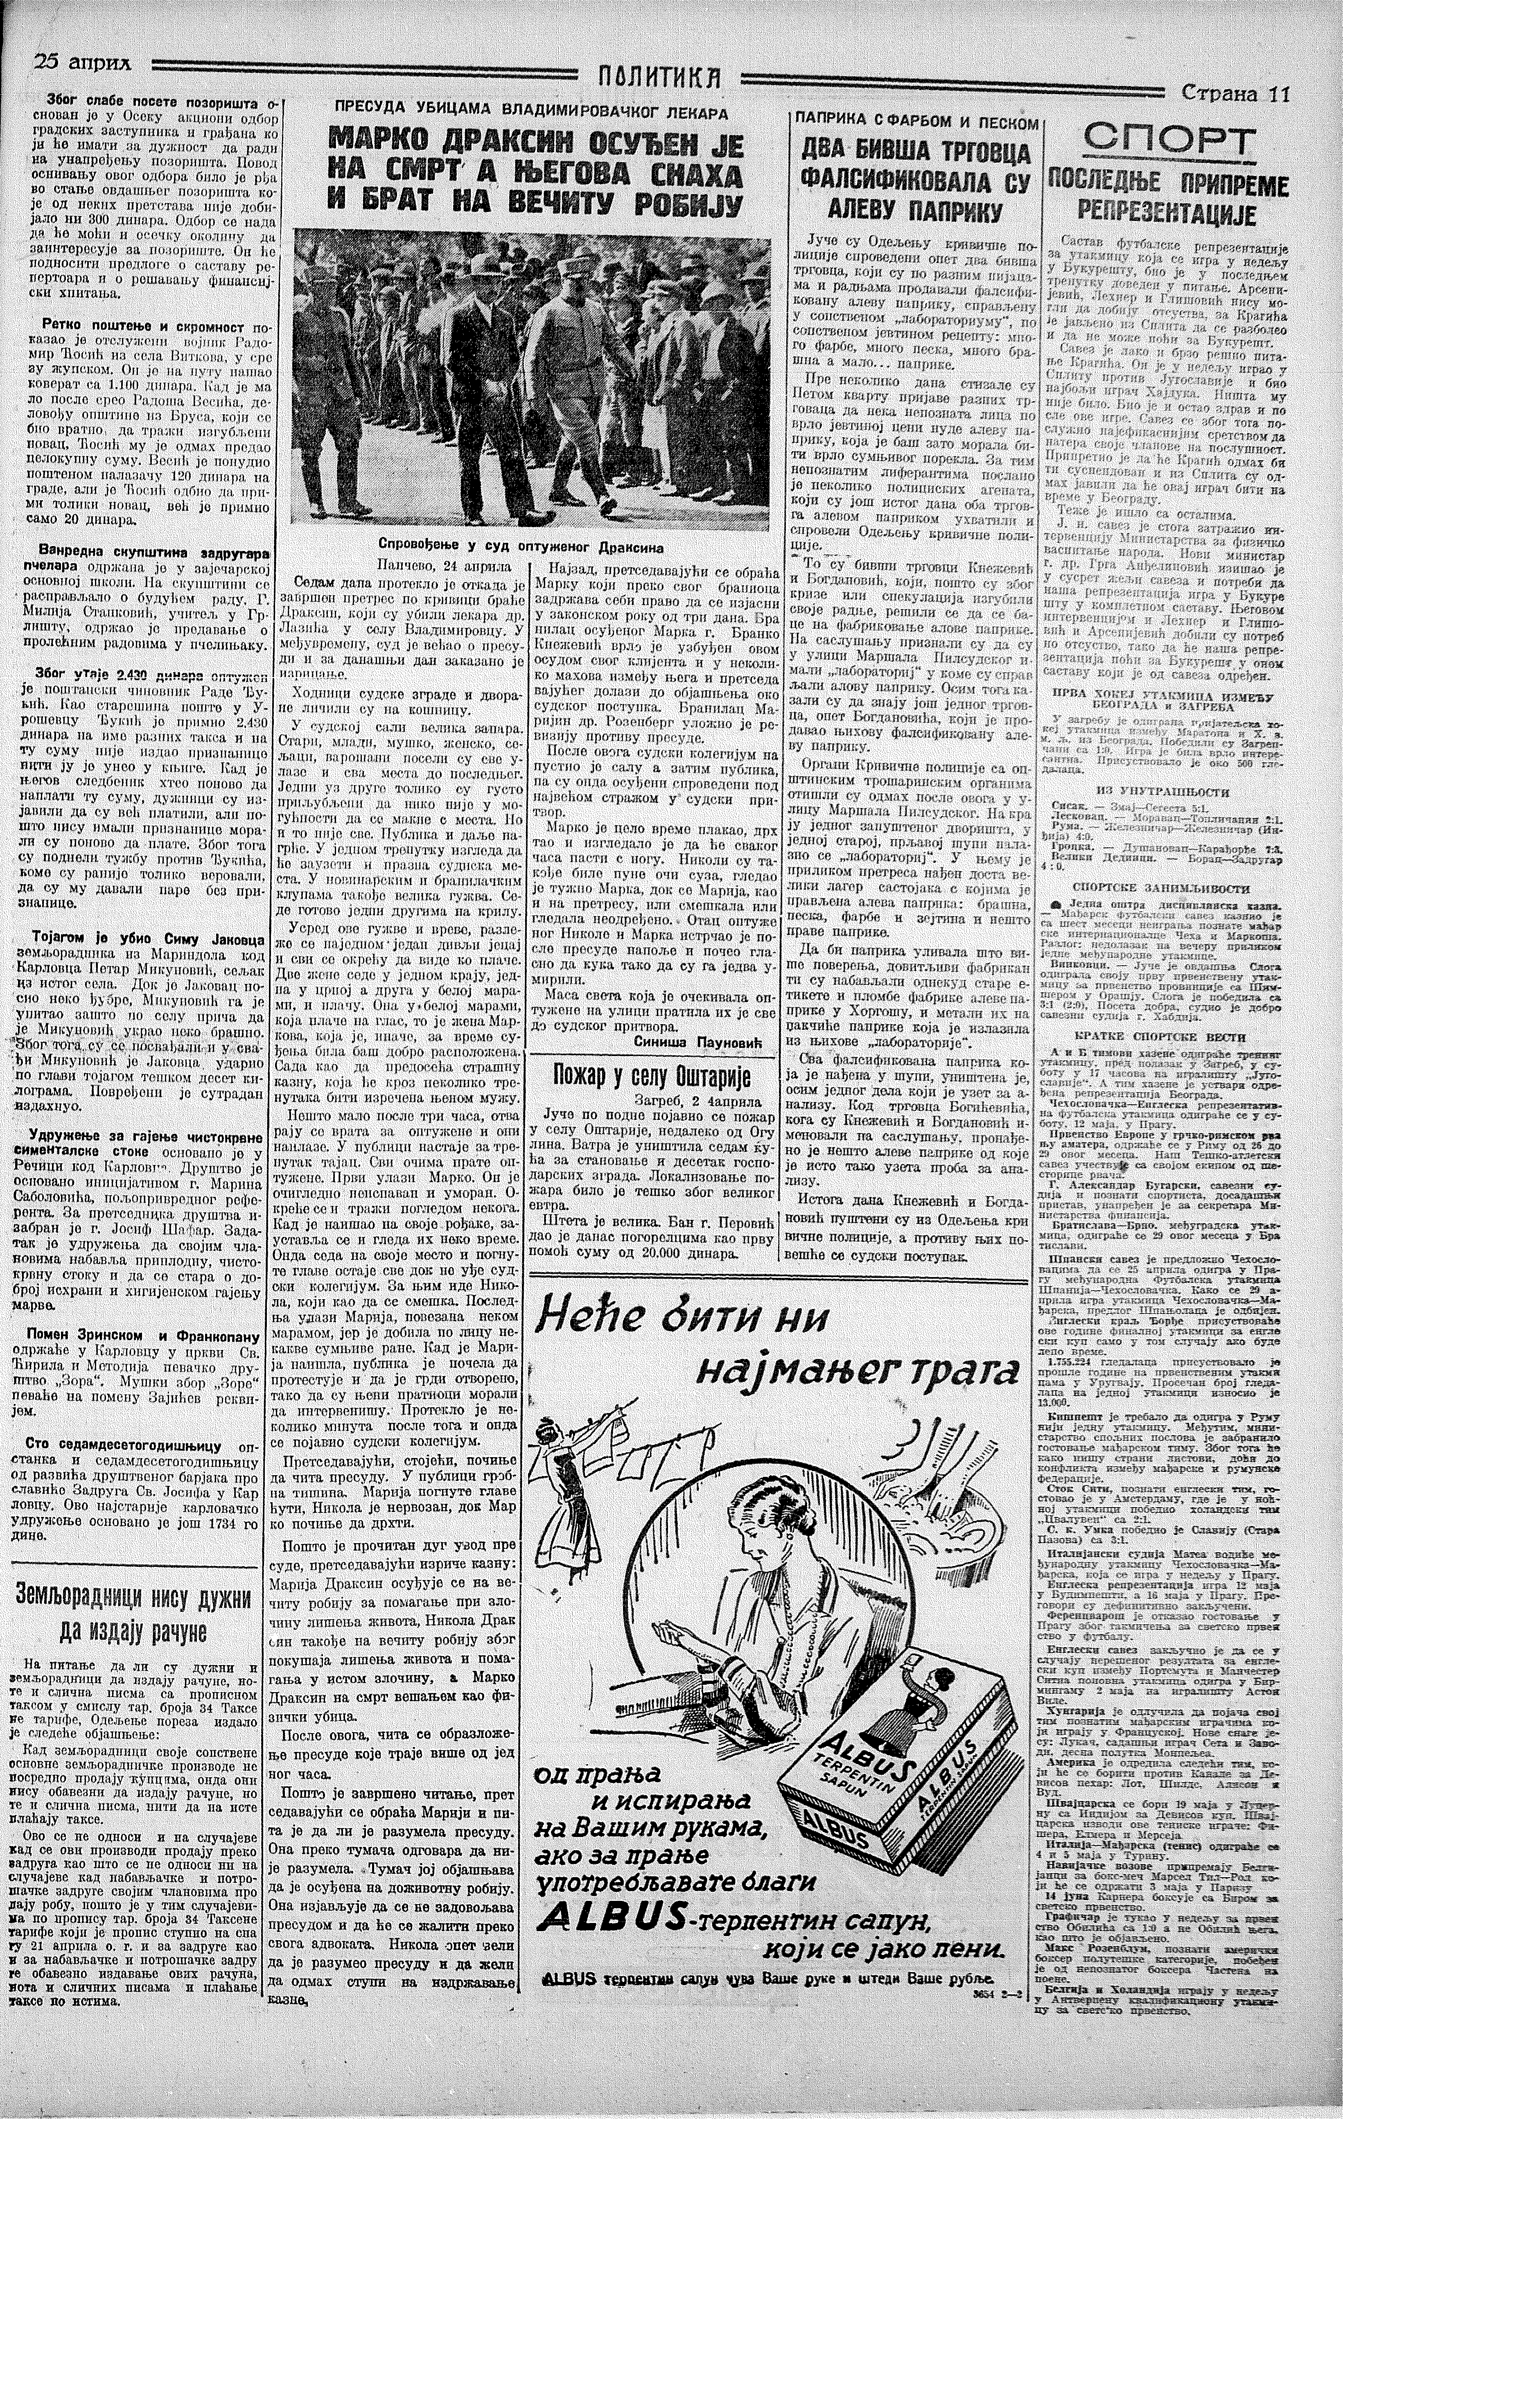 Marko Draksin osuđen na smrt, Politika, 25.04.1934.